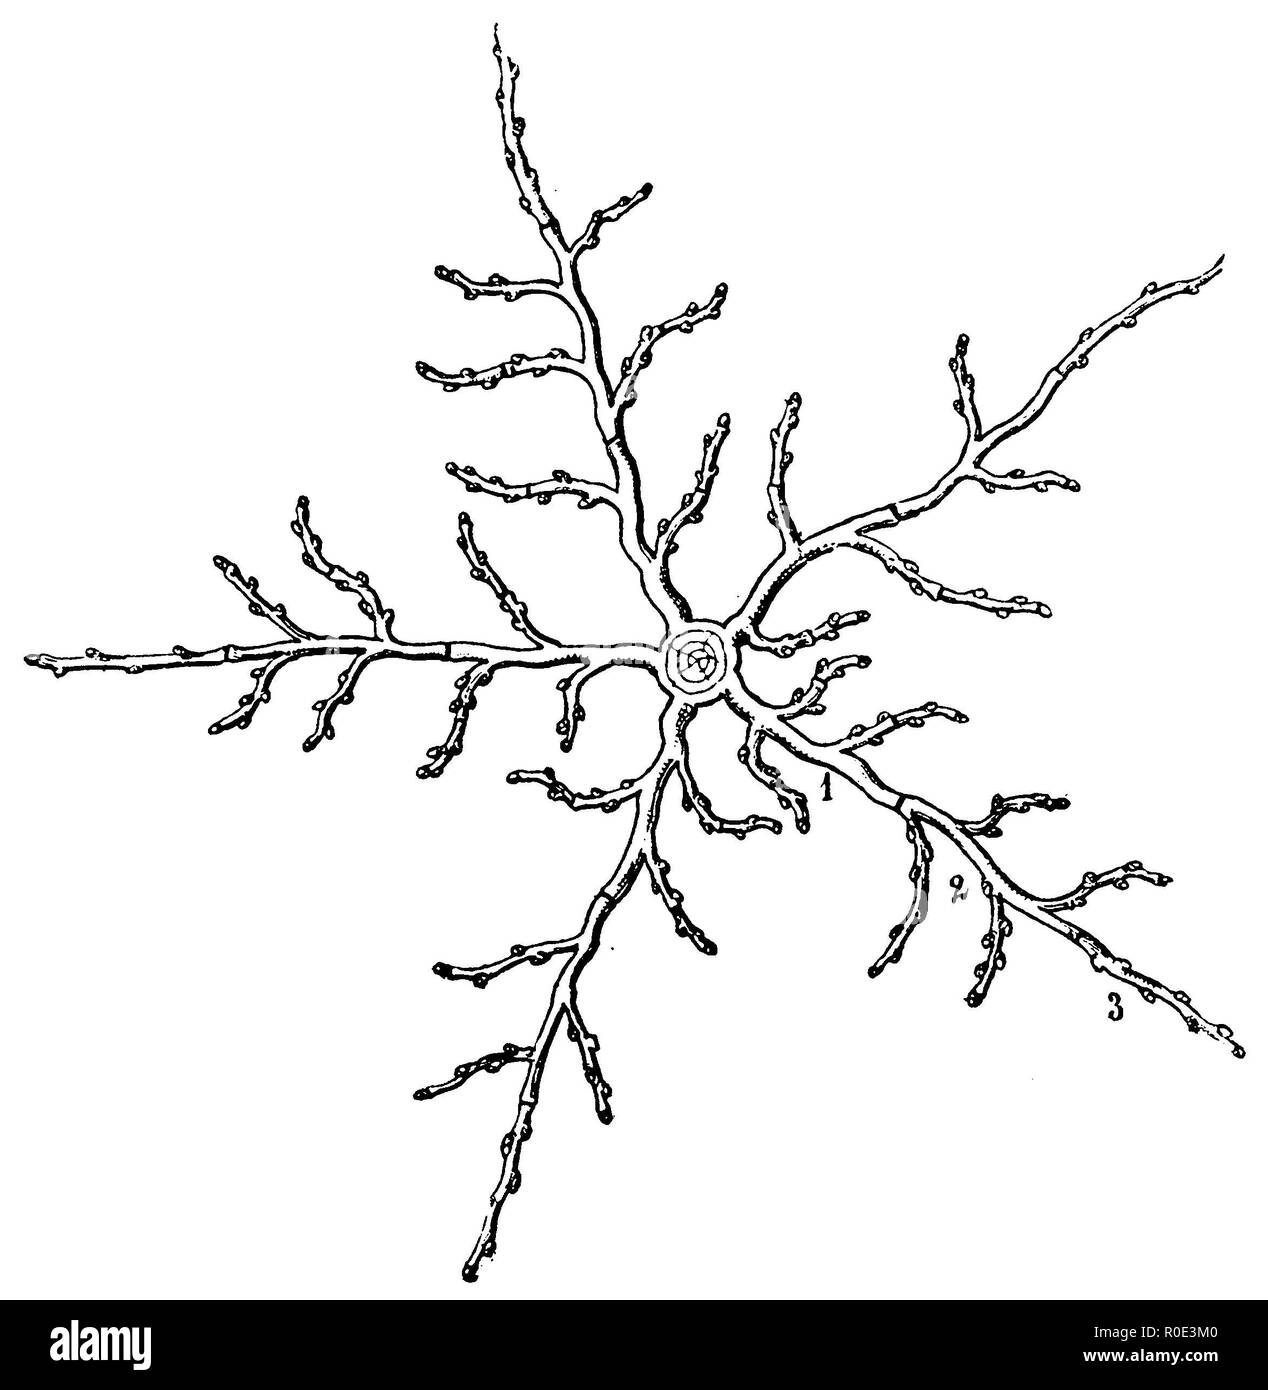 Disegno schematico del piatto superiore-diffusione di rami di un periodo di cinque anni a treetop, anonym 1911 Foto Stock